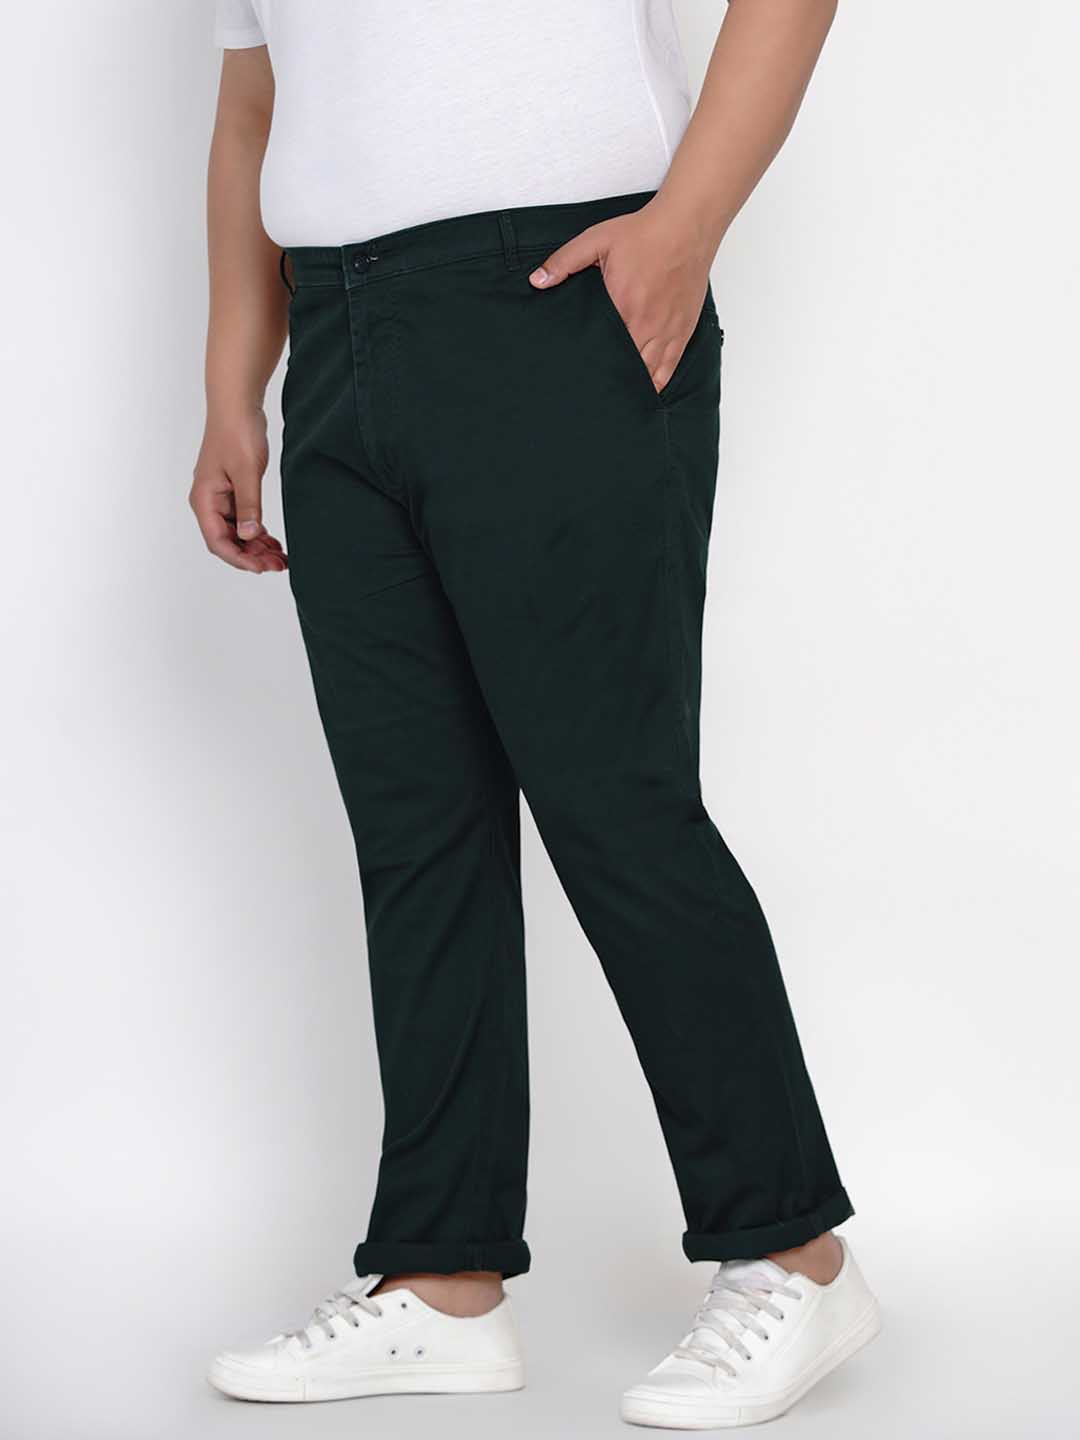 bottomwear/trousers/JPTR2195L/jptr2195l-3.jpg